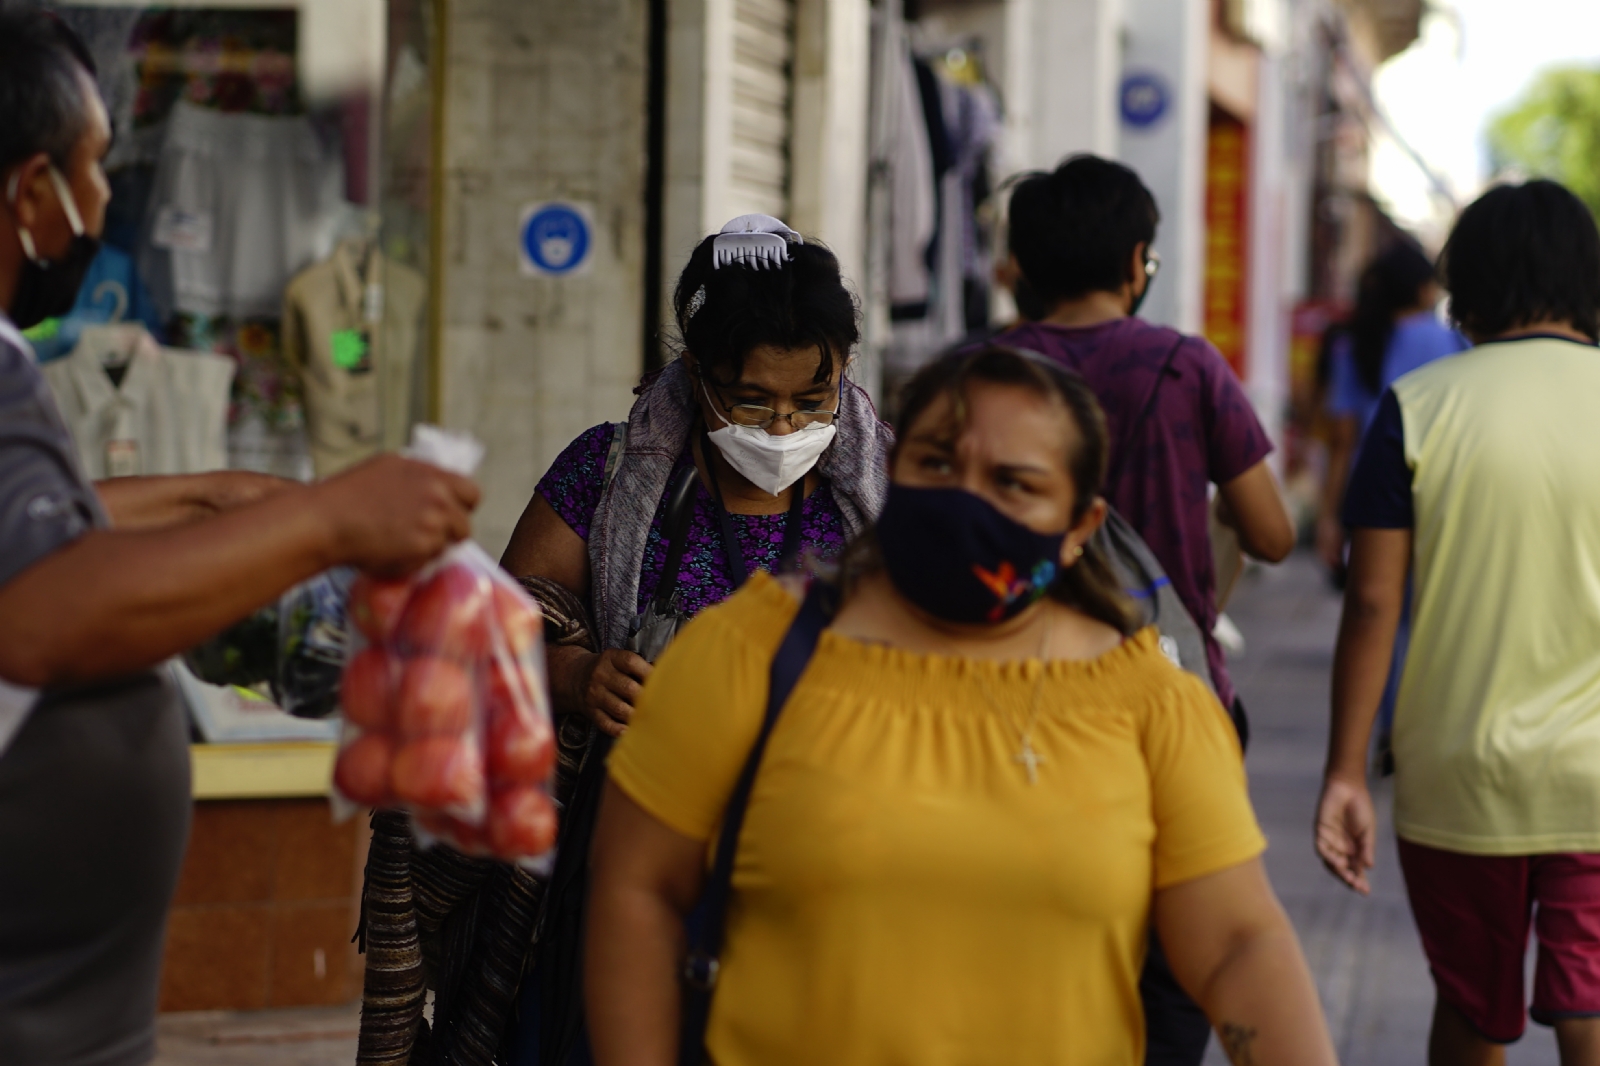 Violencia contra la mujer, tema urgente a tratar en Yucatán, señala activista